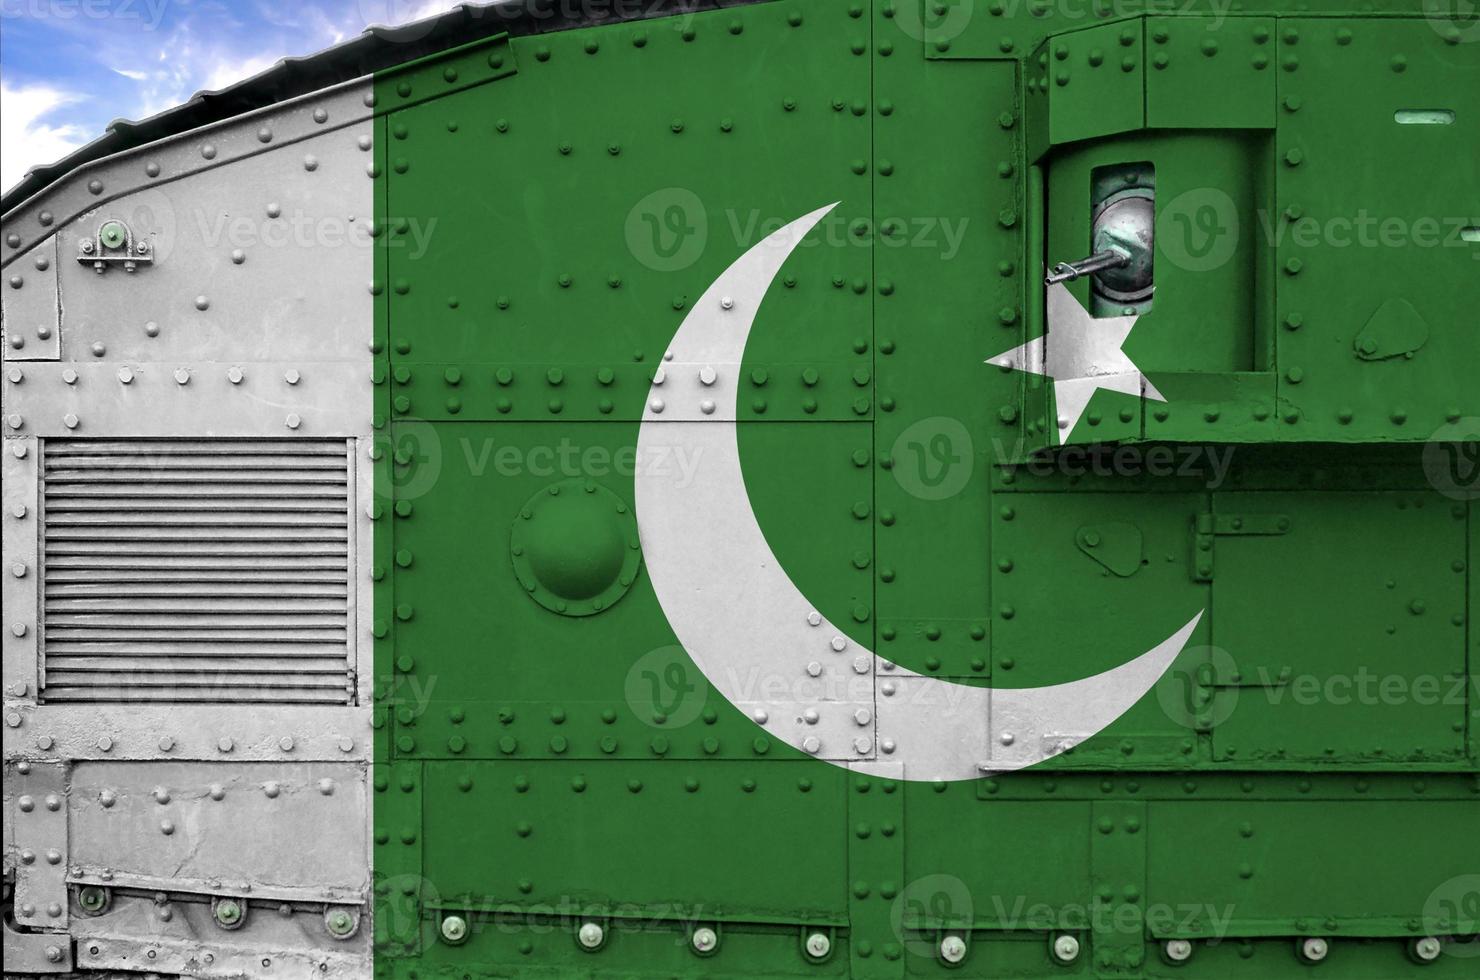 pakistan flagga avbildad på sida del av militär armerad tank närbild. armén krafter konceptuell bakgrund foto